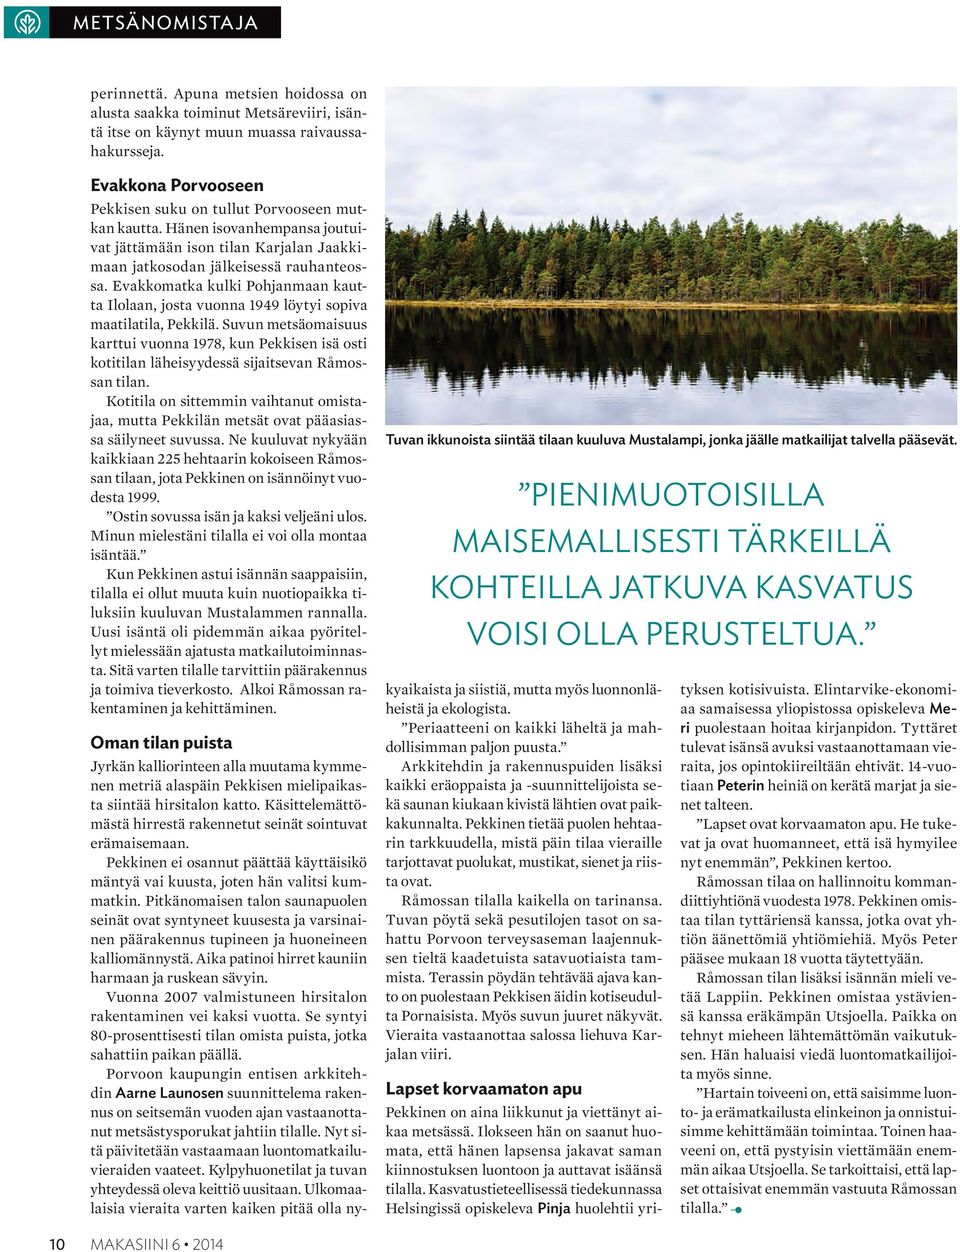 Evakkomatka kulki Pohjanmaan kautta Ilolaan, josta vuonna 1949 löytyi sopiva maatilatila, Pekkilä.